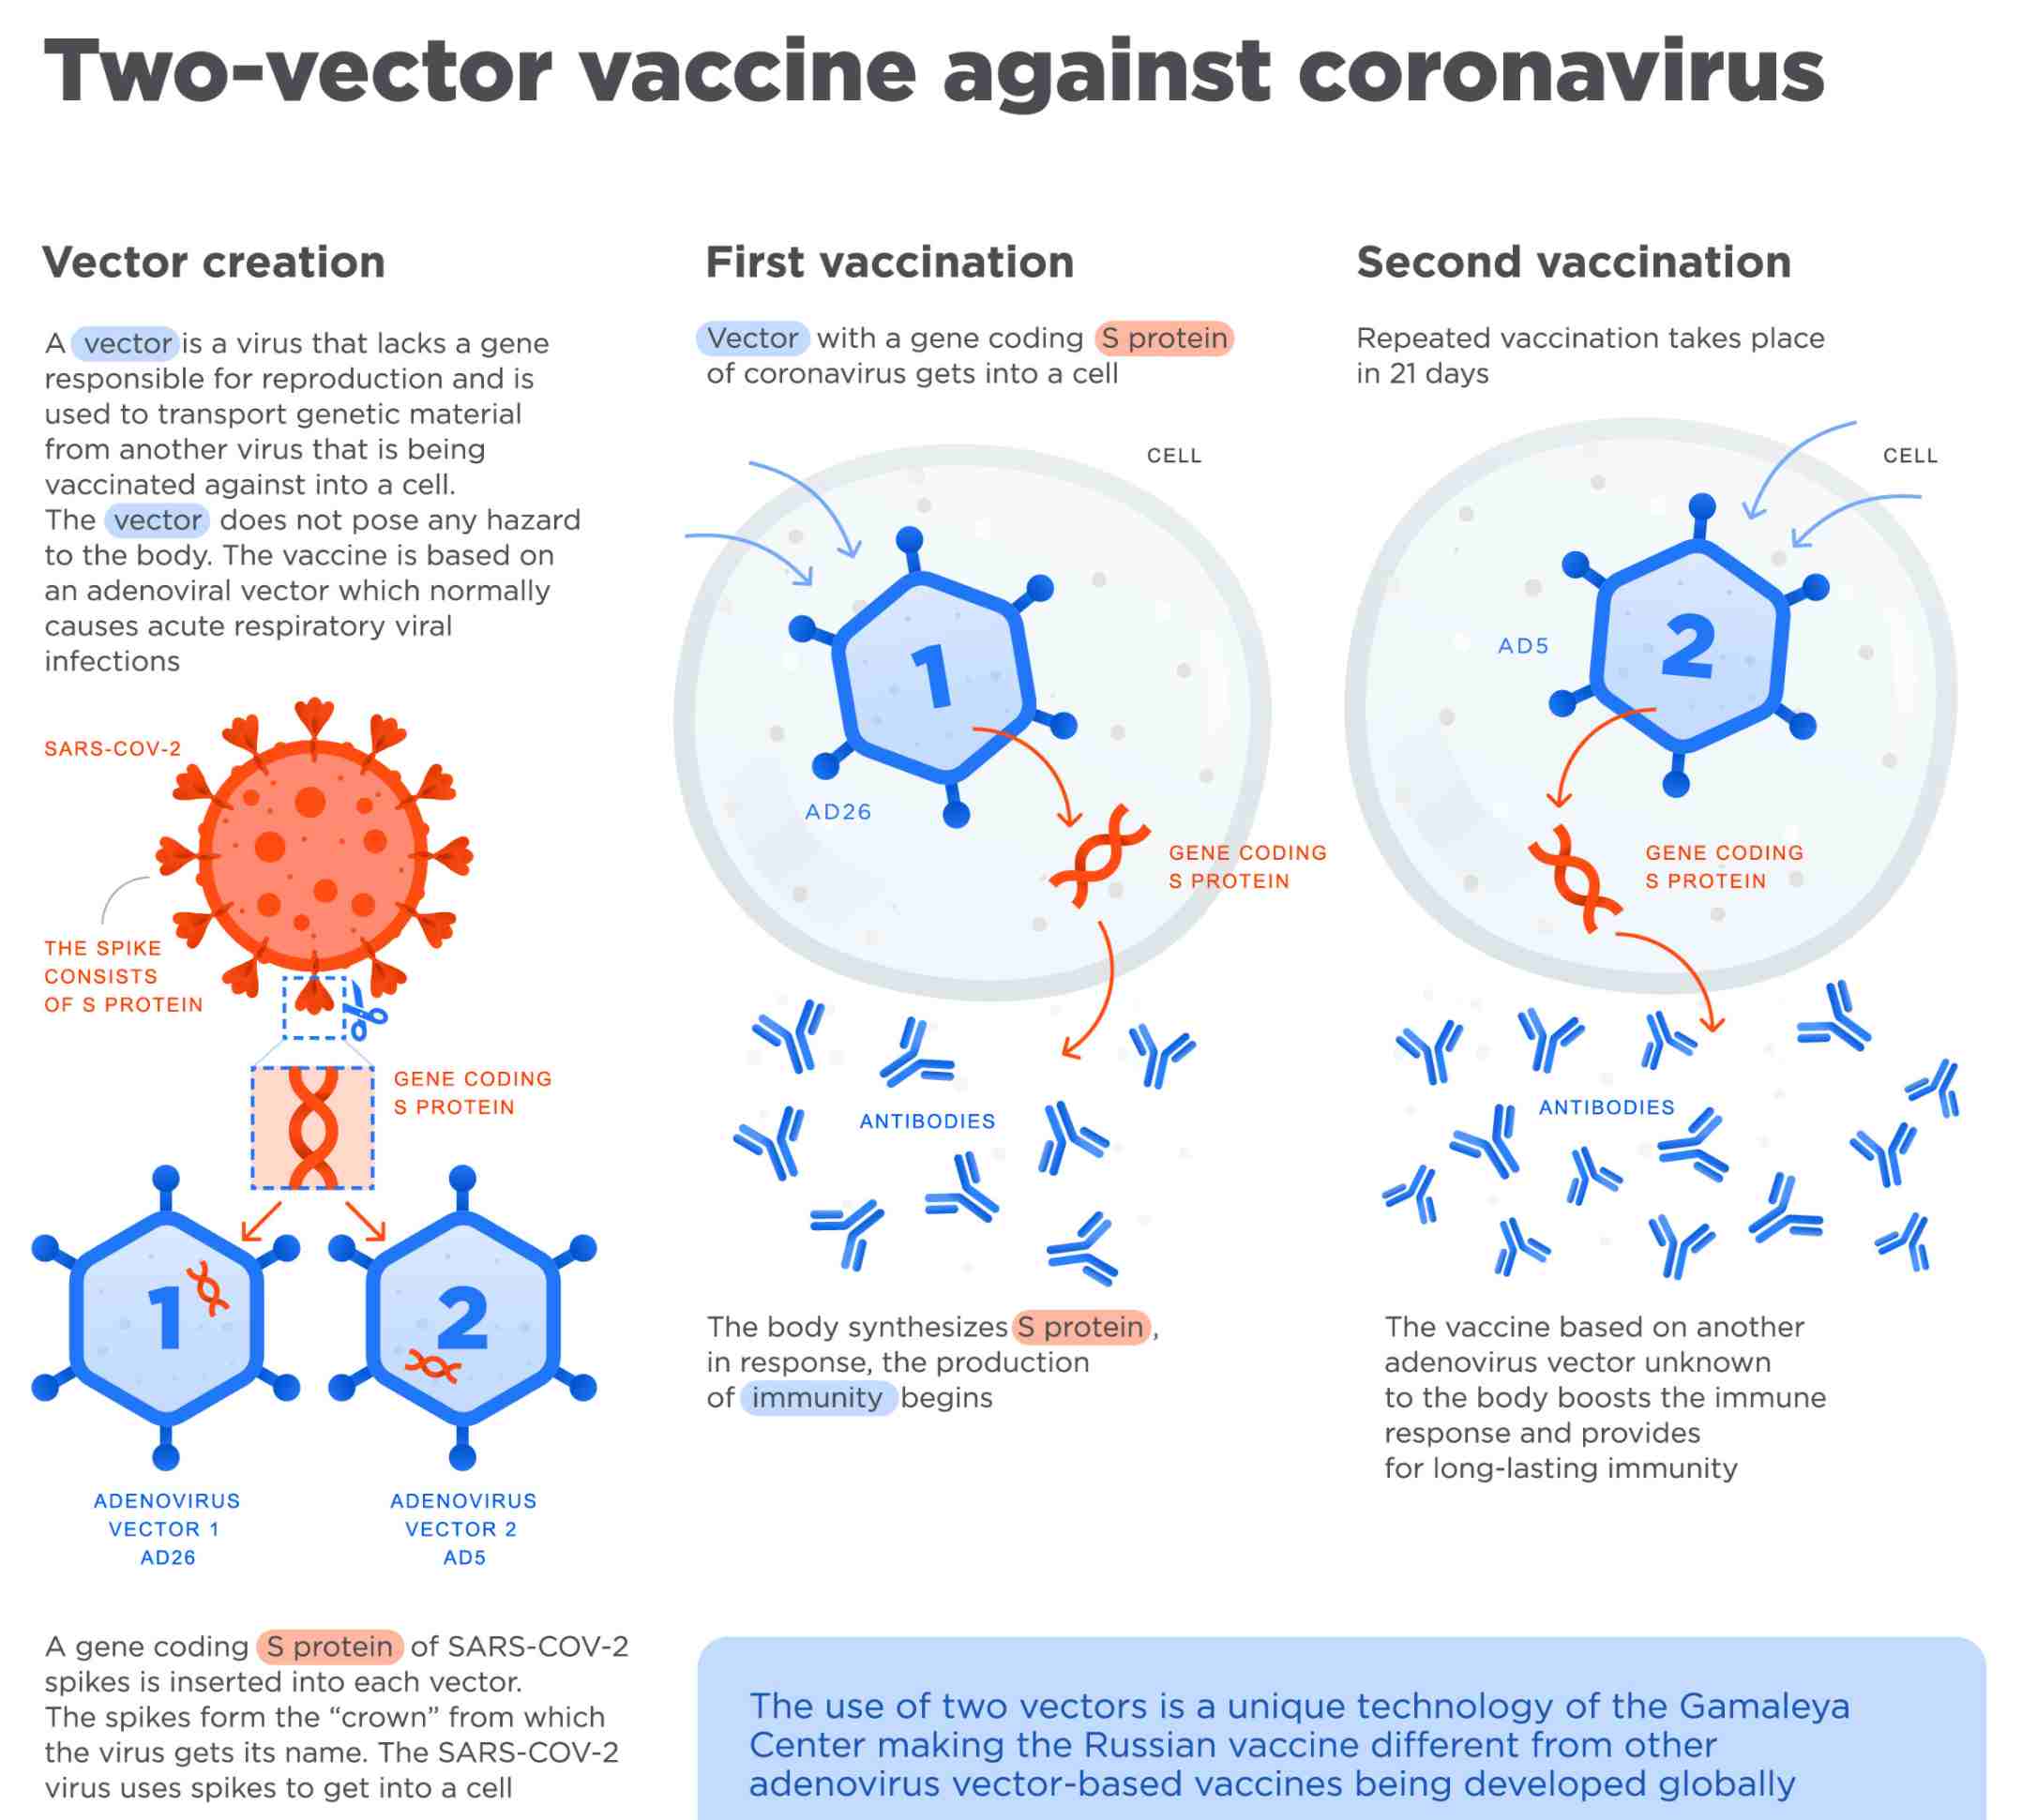 Valanghe di critiche sul vaccino russo anti-covid ma sarebbero "infondate e legate alla concorrenza" 4